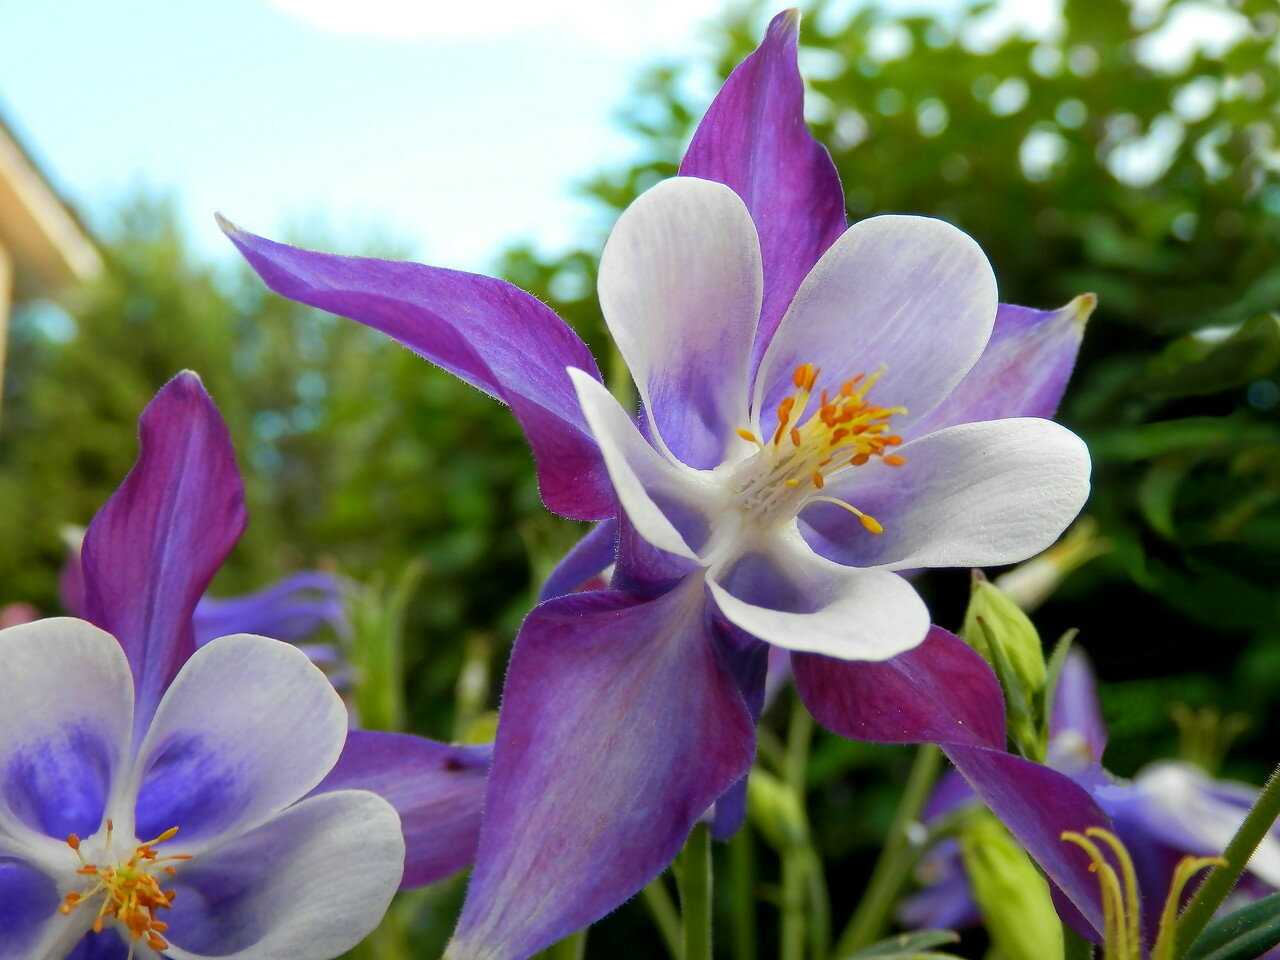 Аквилегия (водосбор): фото цветов на клумбе, виды, как выглядит растение, описание цветка, характеристики, отзывы